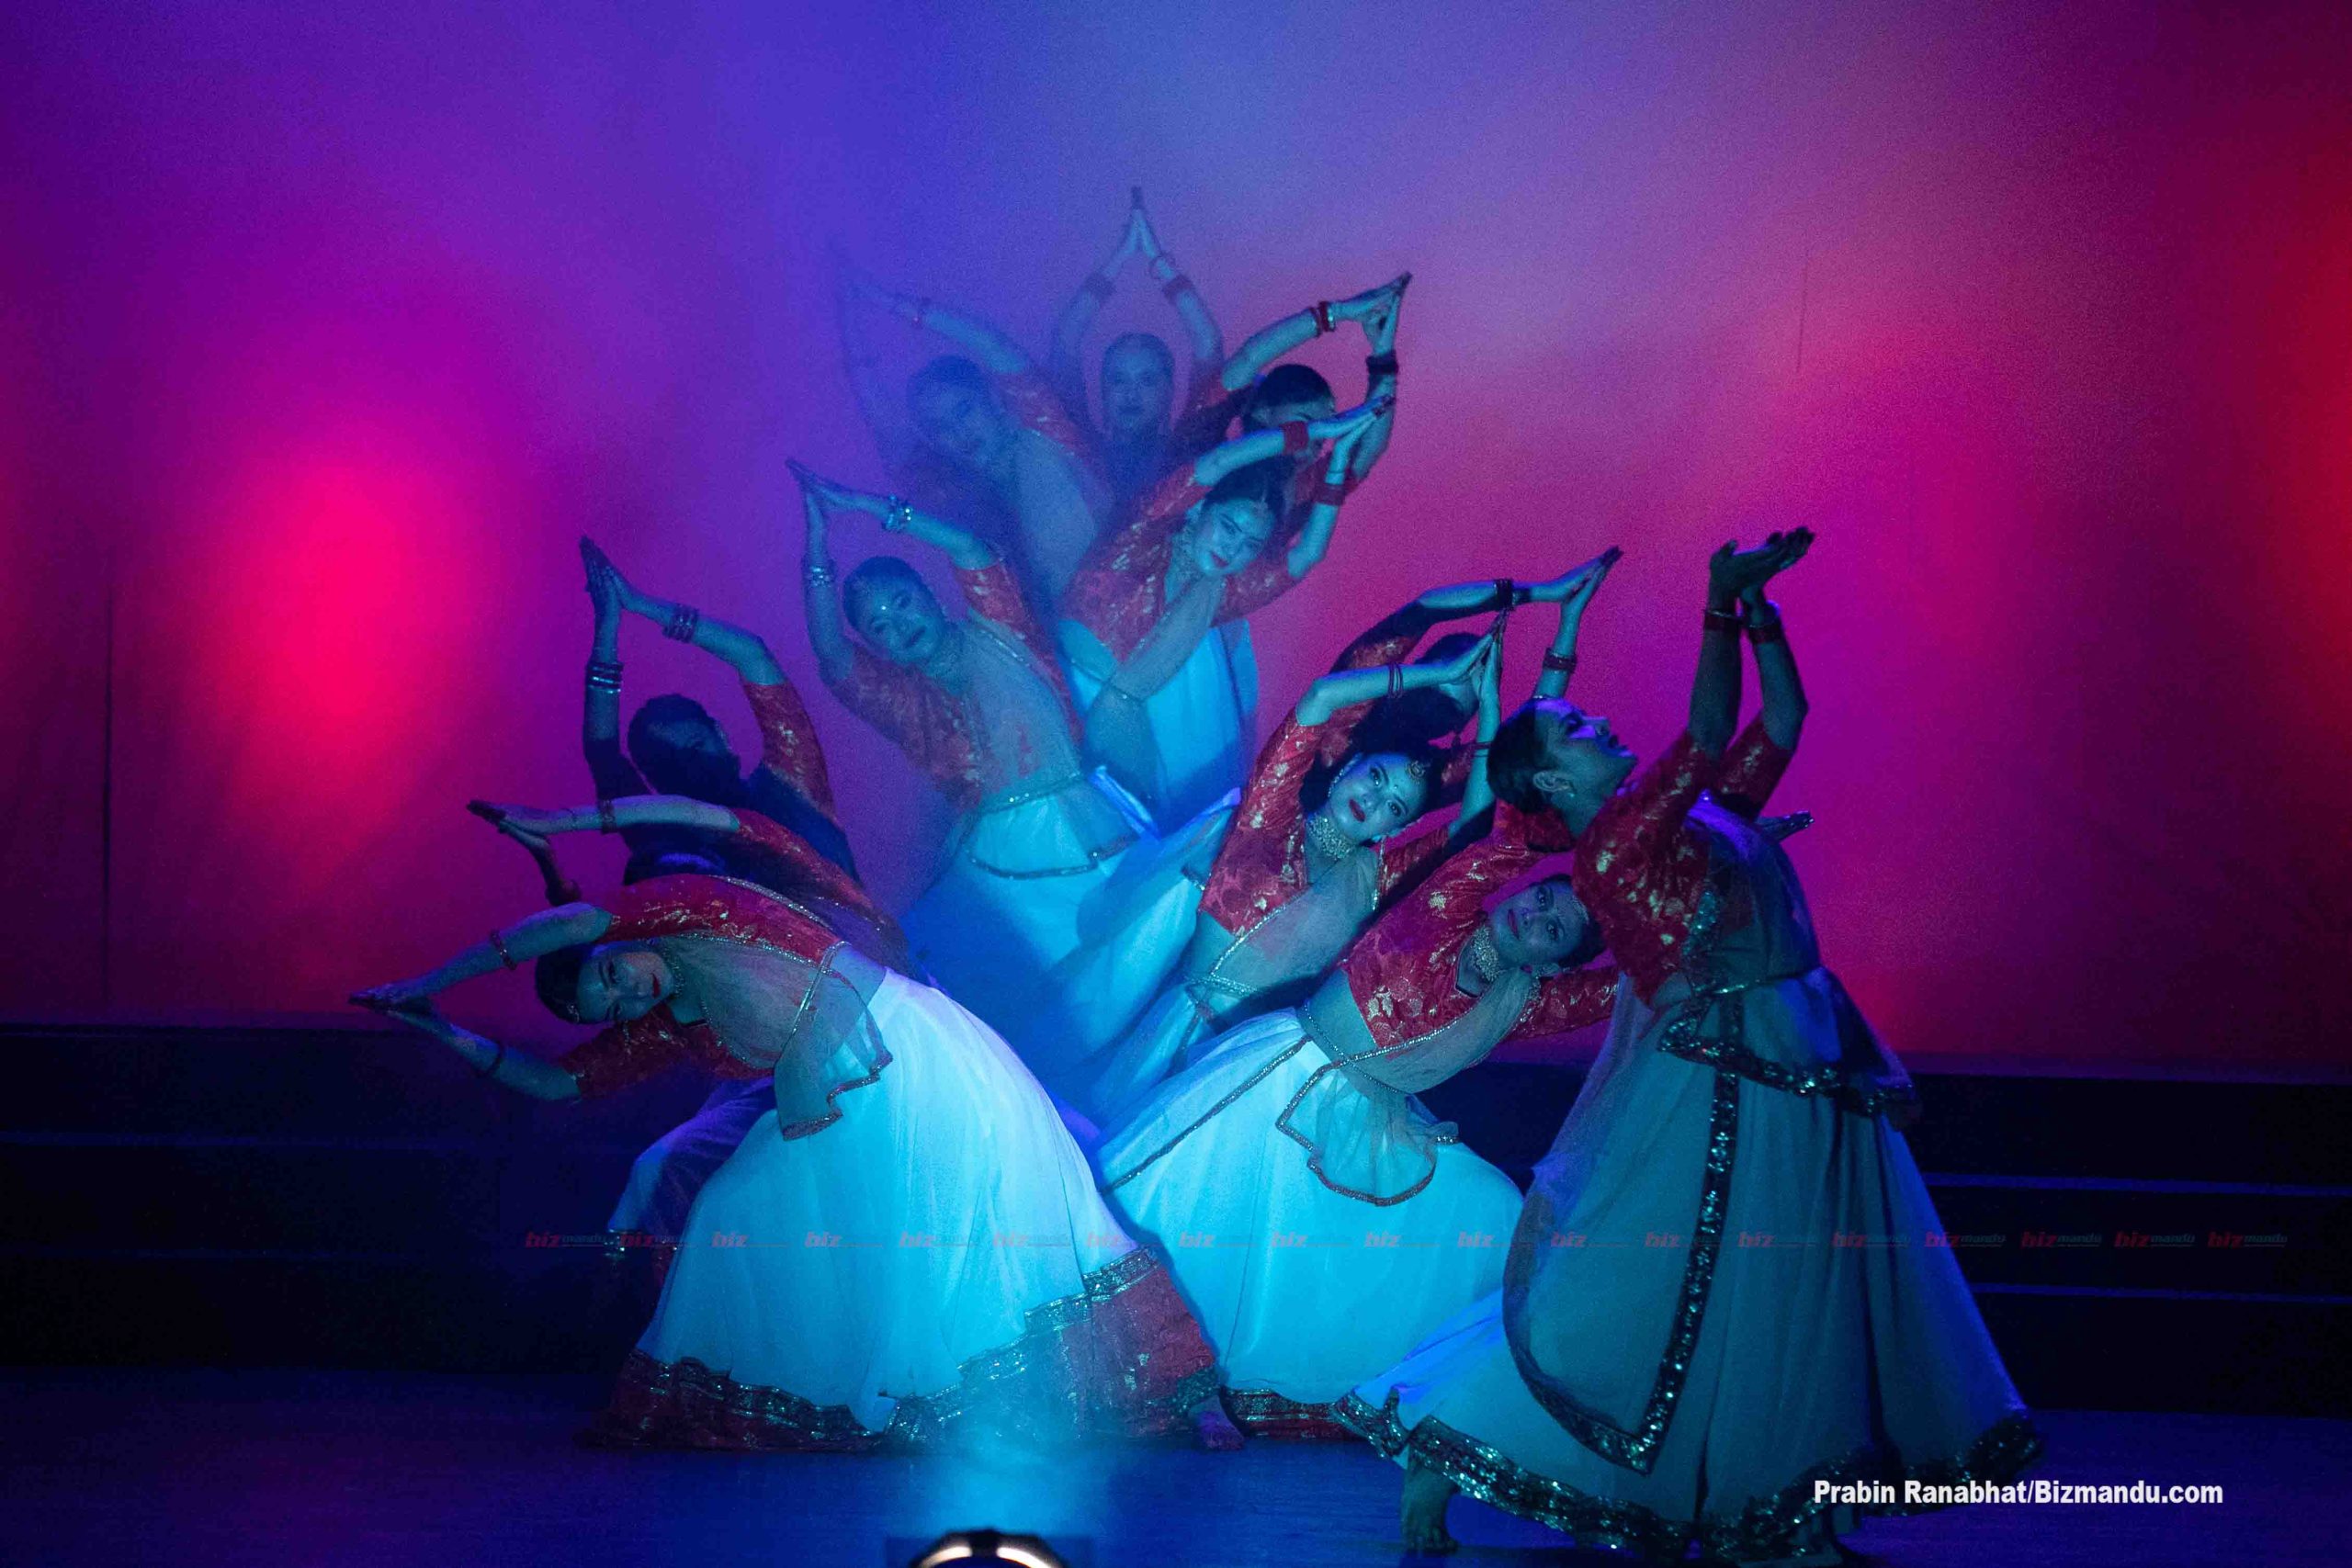 दसैंको अवसरमा नृत्य शृंखला, मञ्चन भयो दुर्गा भवानीको कथा